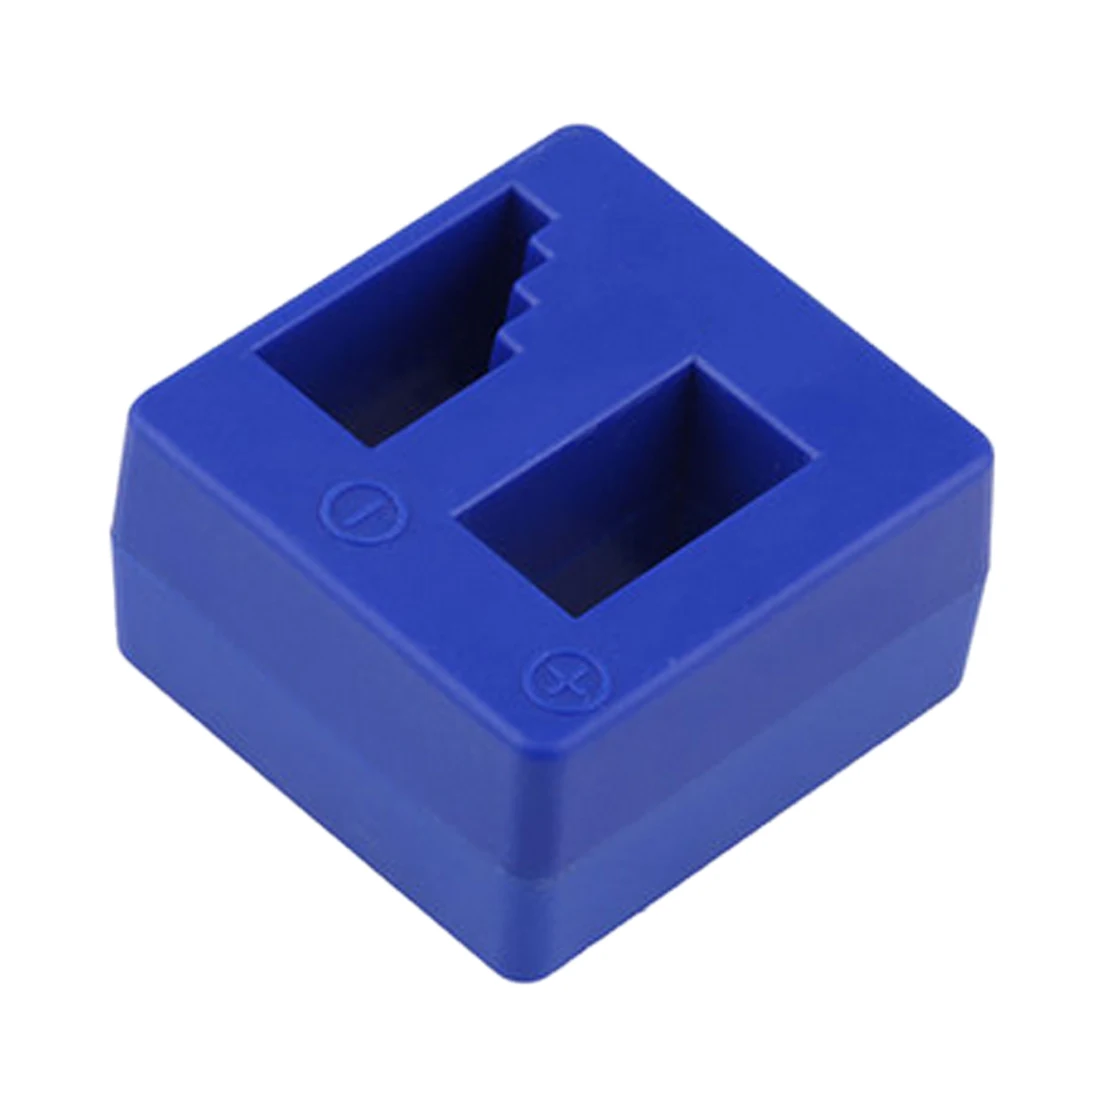 1 шт. синий намагничатель инструмент для размагничивания отвертка скамейка наконечники биты гаджет Удобный Намагниченный драйвер быстрое магнитное размагничивание